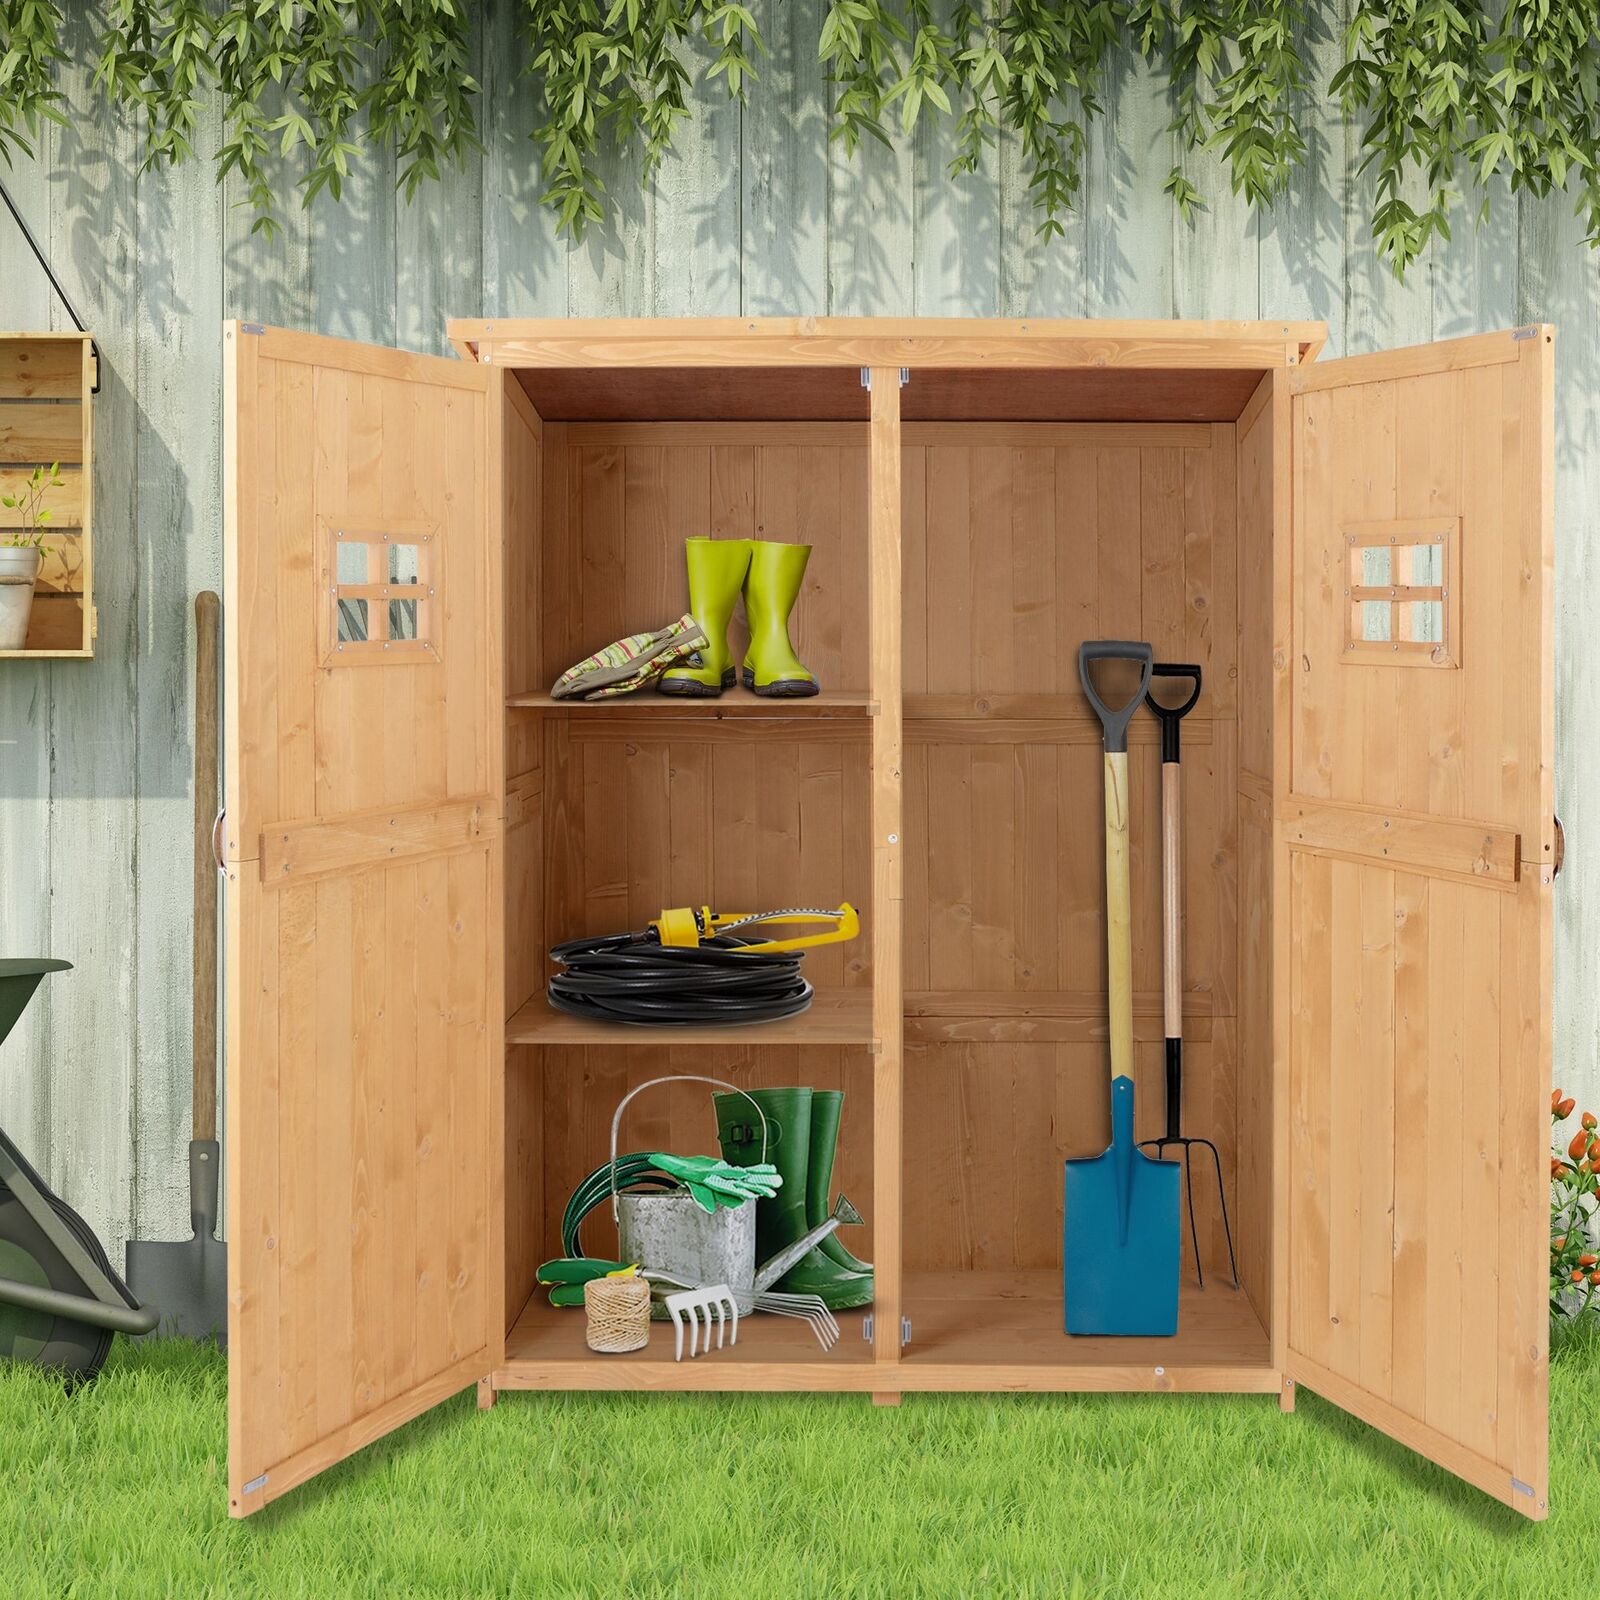 Wooden Garden Shed Tool Storage Cabinet Double Door Shelf Natural Wood